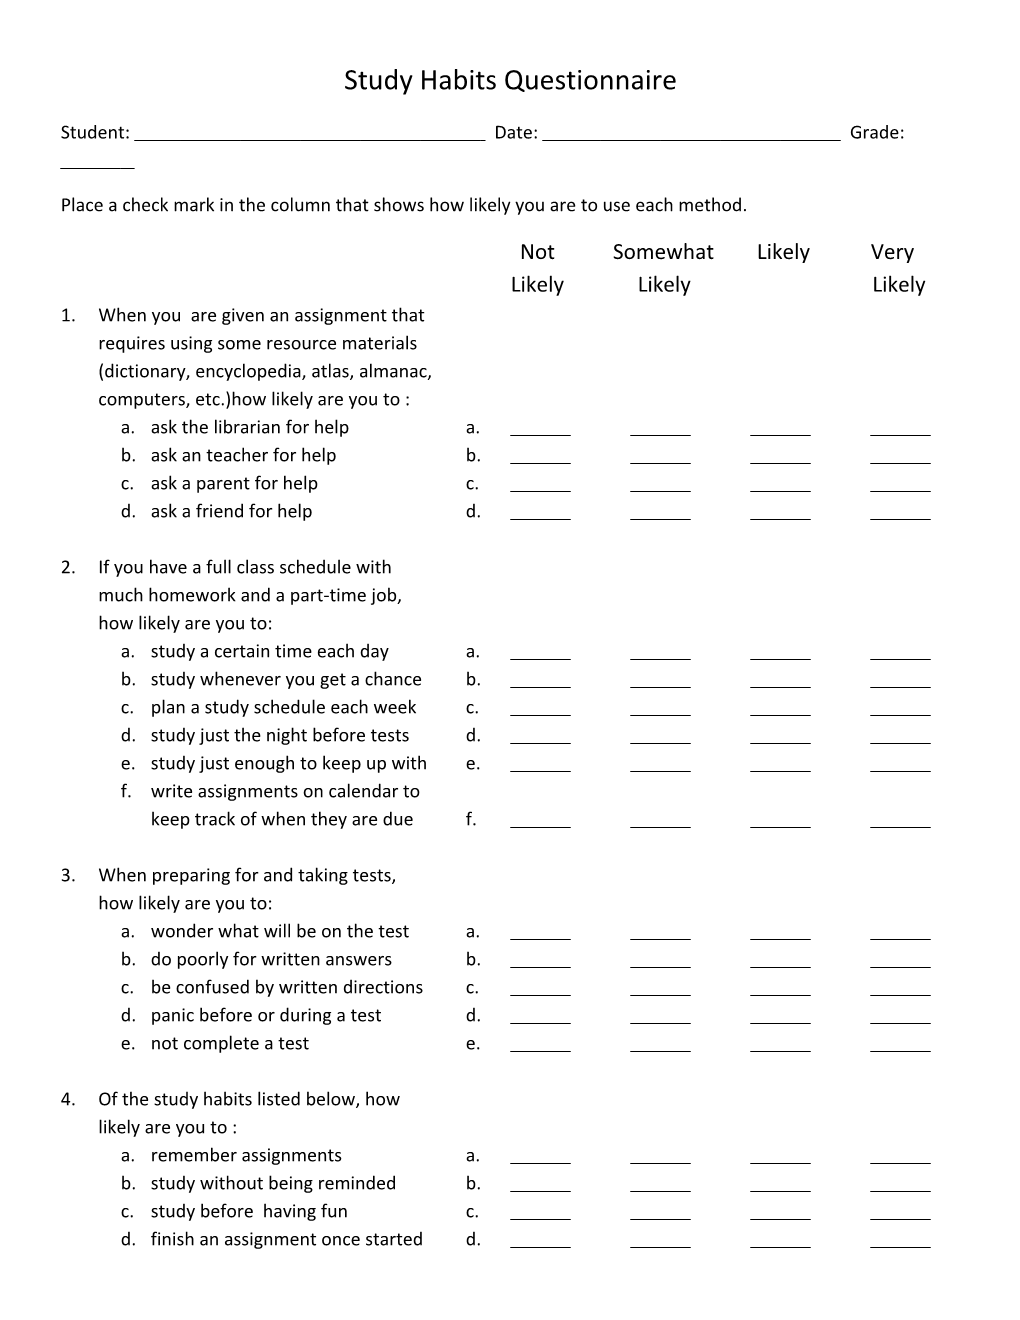 Study Habits Questionnaire